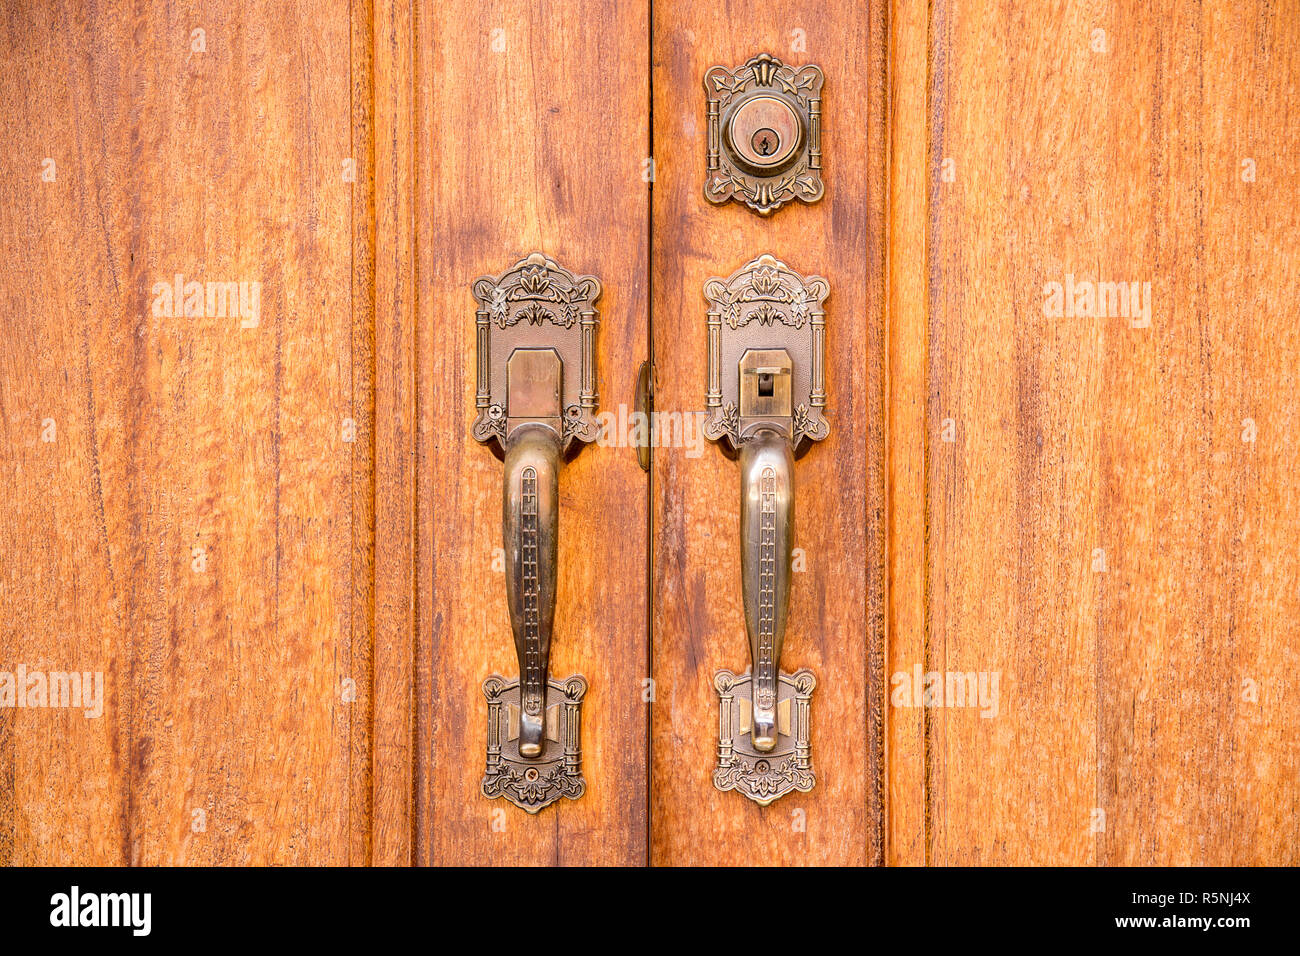 Vintage brass door handle with lock on wooden door Stock Photo